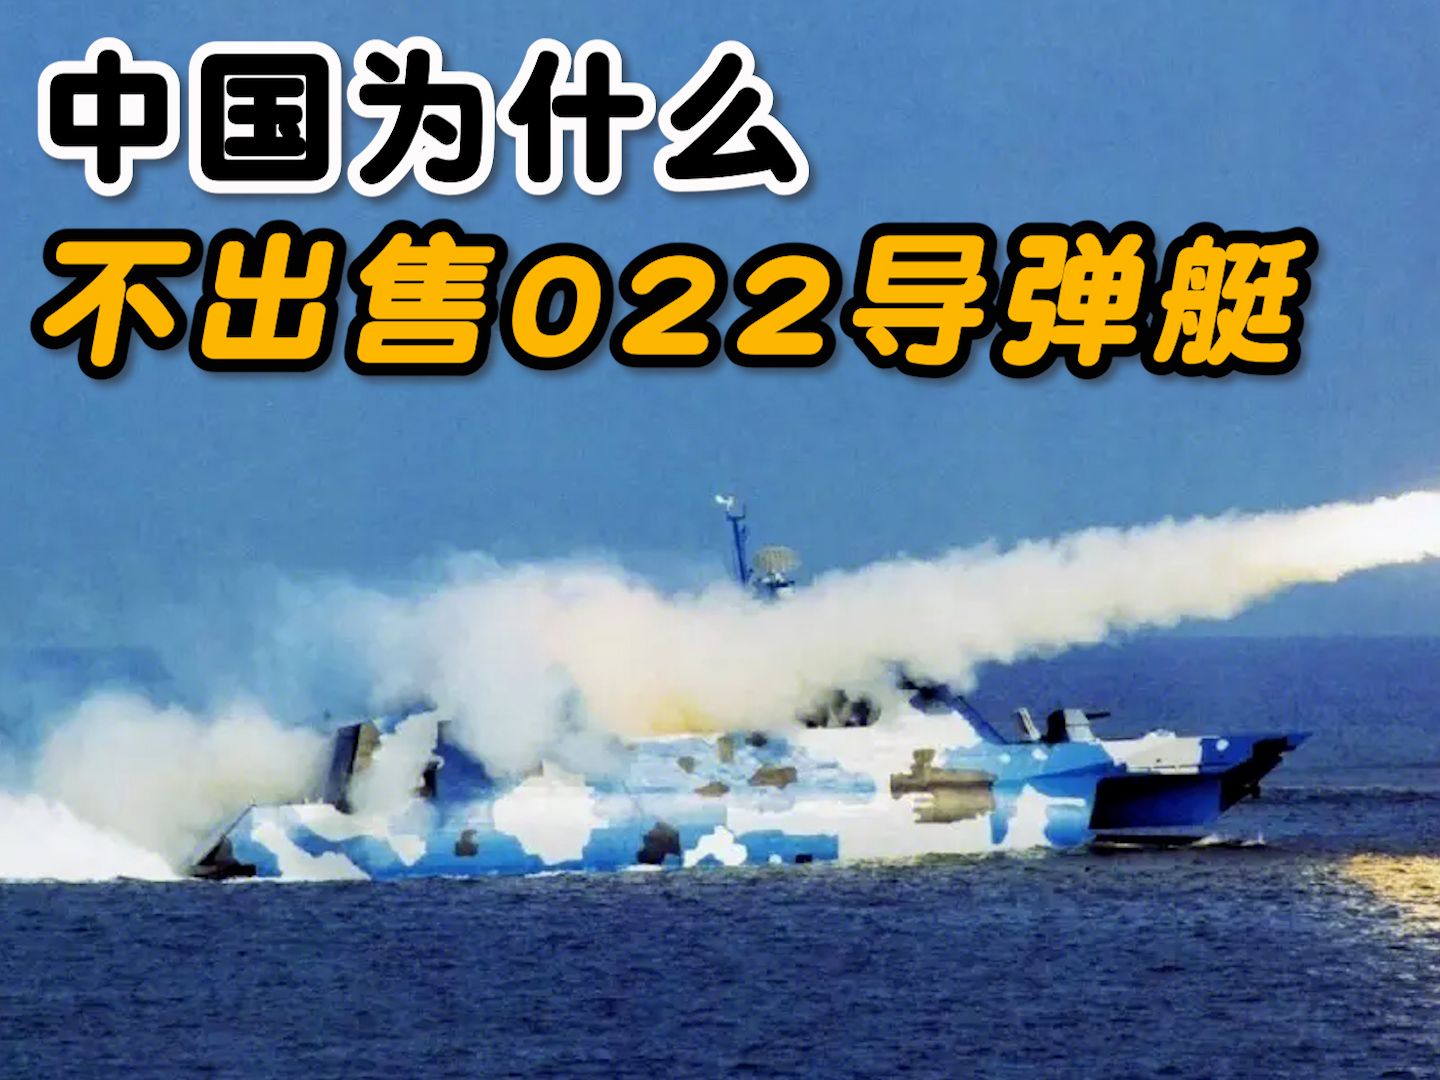 022导弹艇太无耻图片